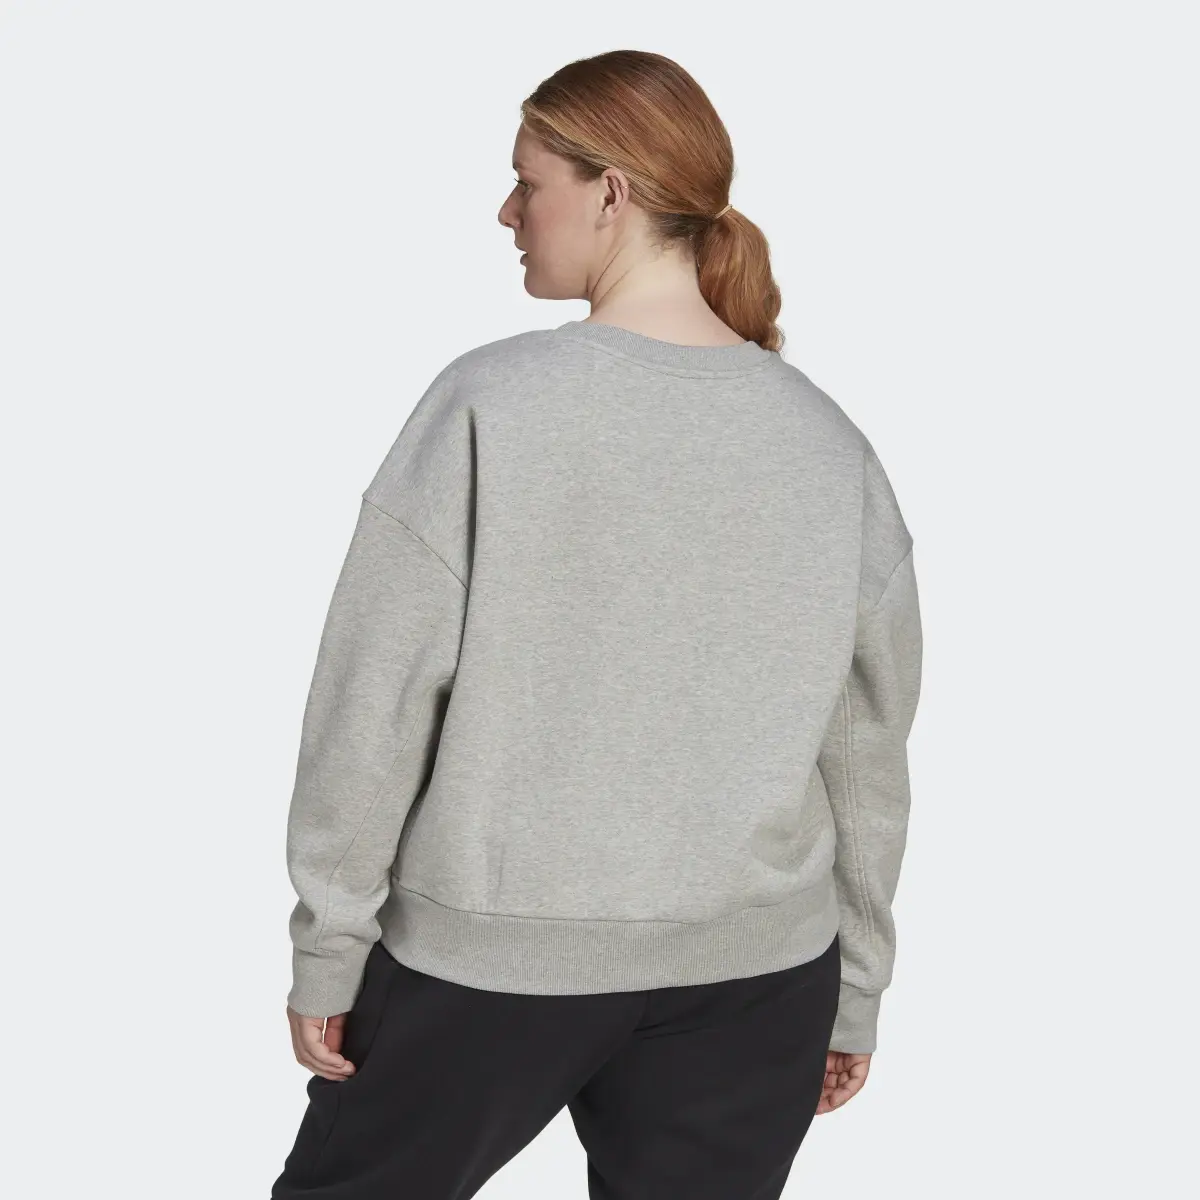 Adidas ALL SZN Fleece Sweatshirt (Plus Size). 3